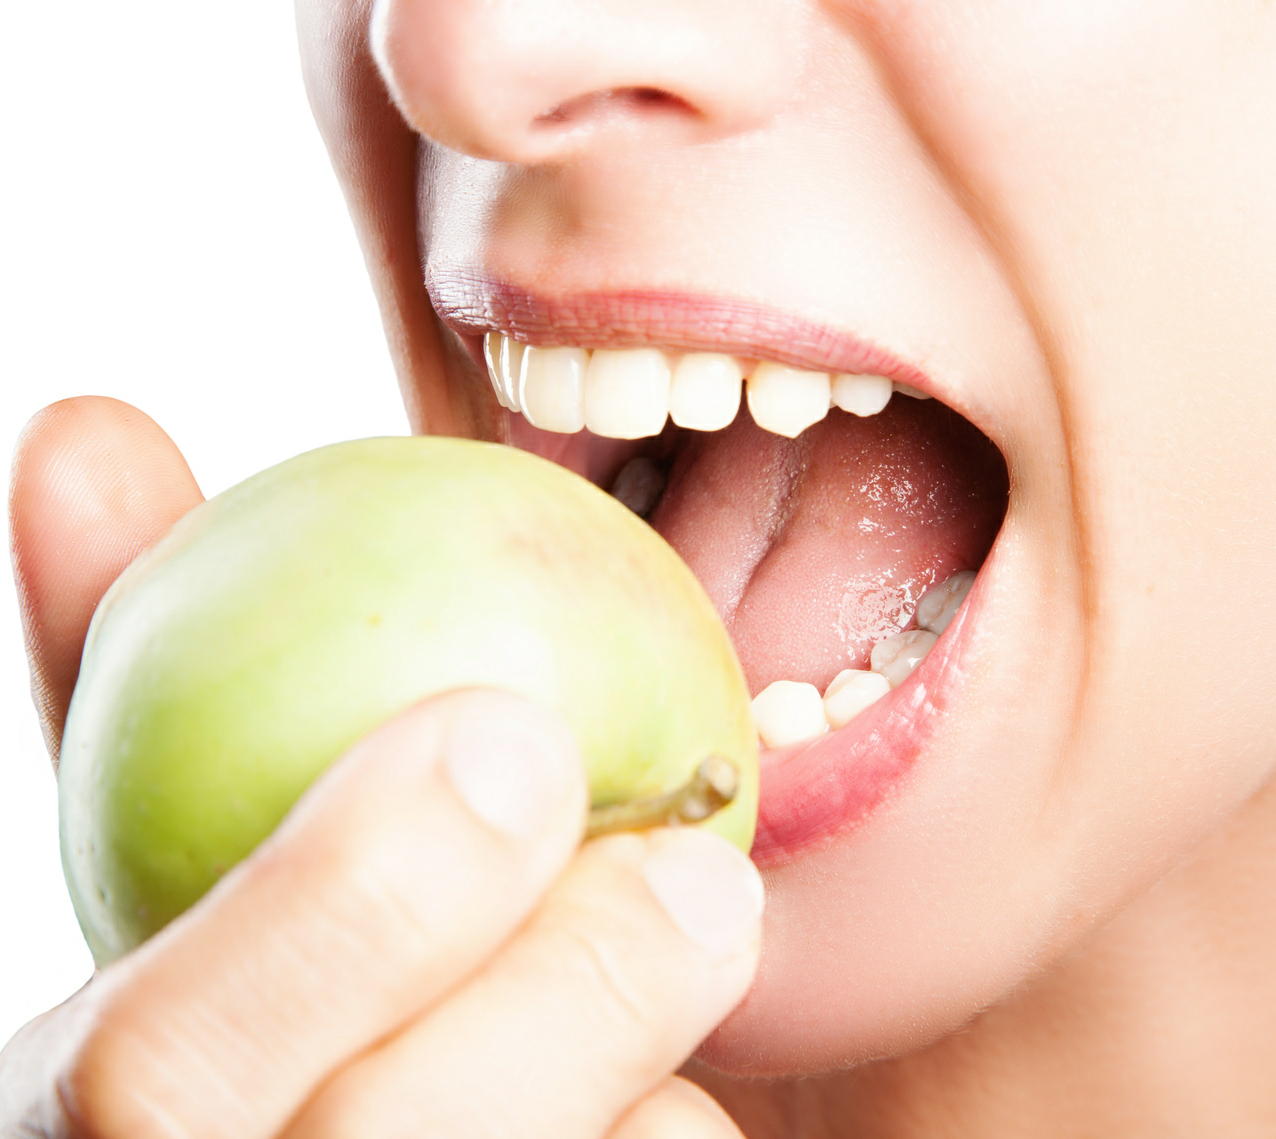 「口から食べる」ことが健康維持に役立つ　よく噛むとホルモン分泌が増える